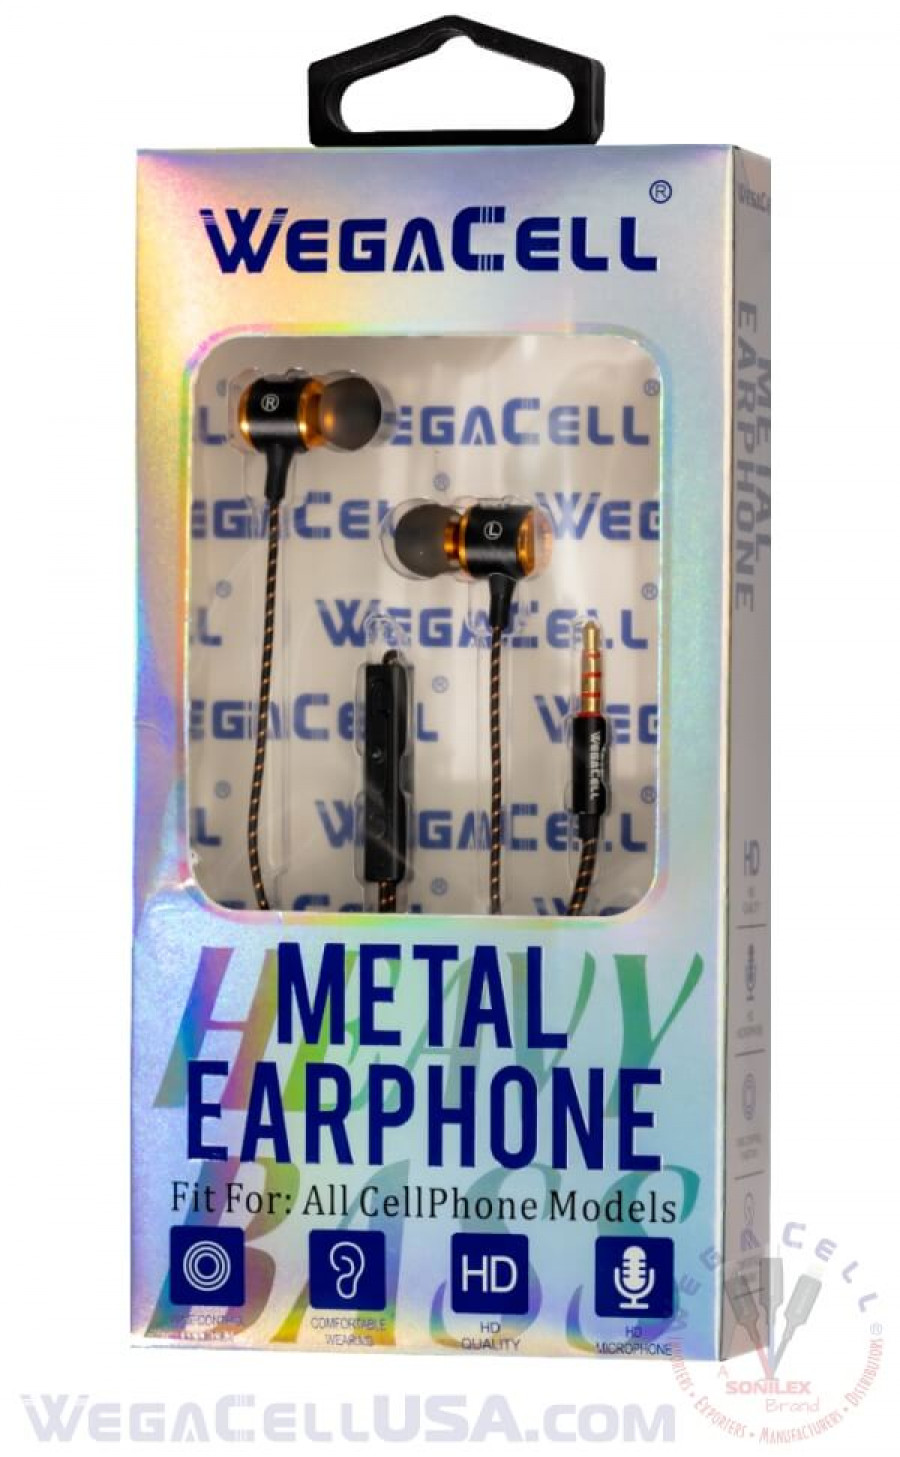 in-ear stereo earphone noise isolating heavy bass - wholesale pkg. wegacell: wl-222ep-hf earphone 16